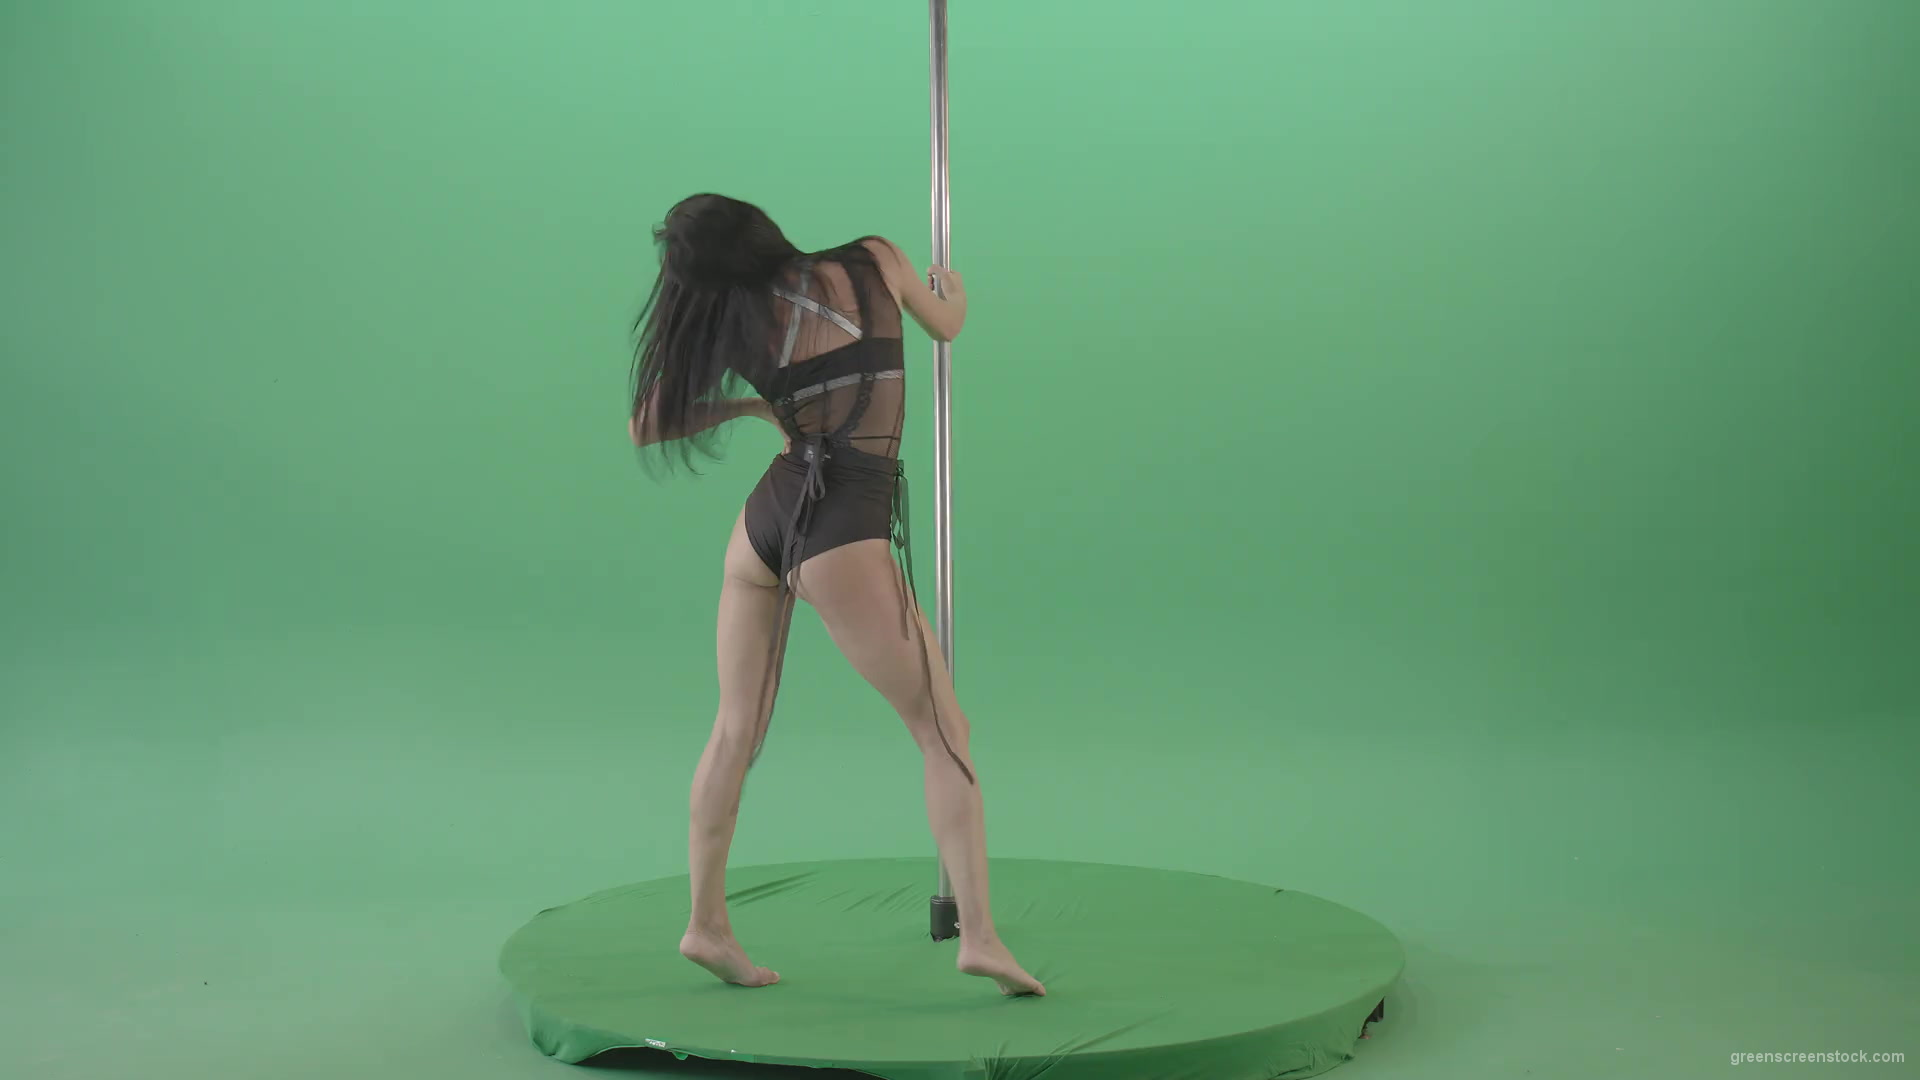 Strip pole video